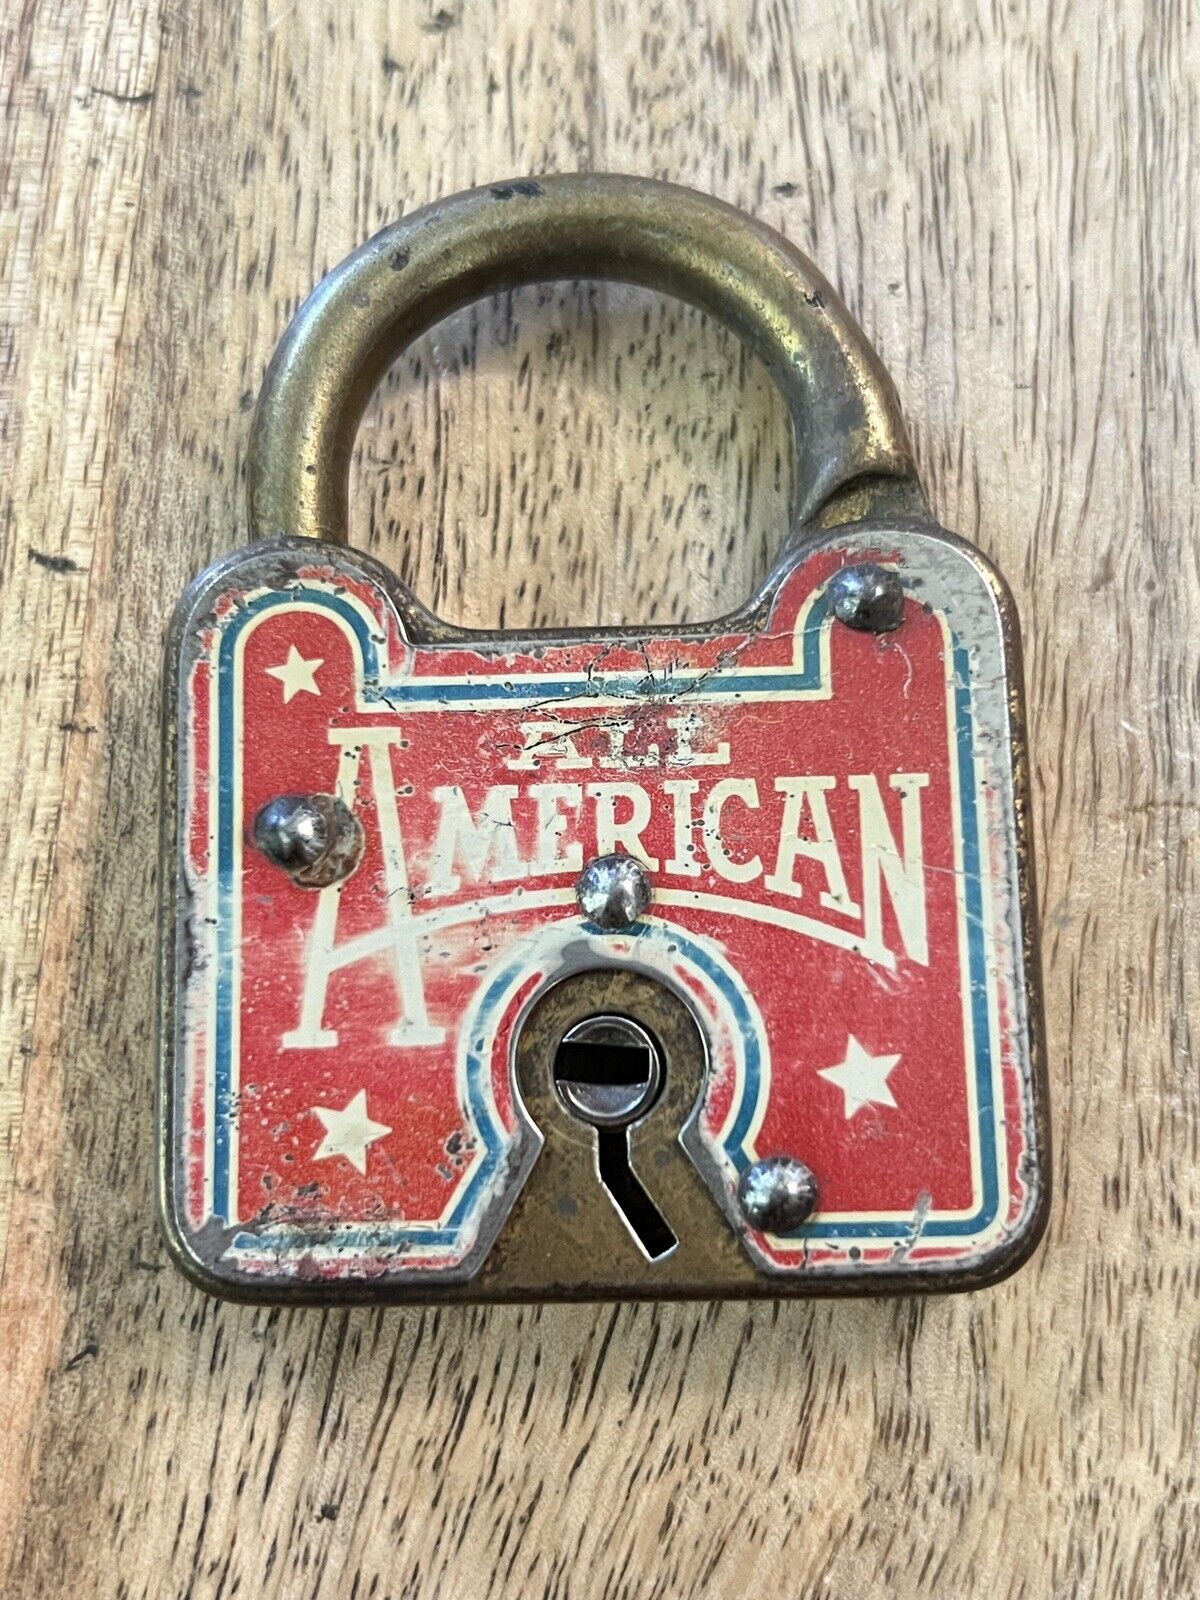 Vintage Old All American Padlock No Key Lock